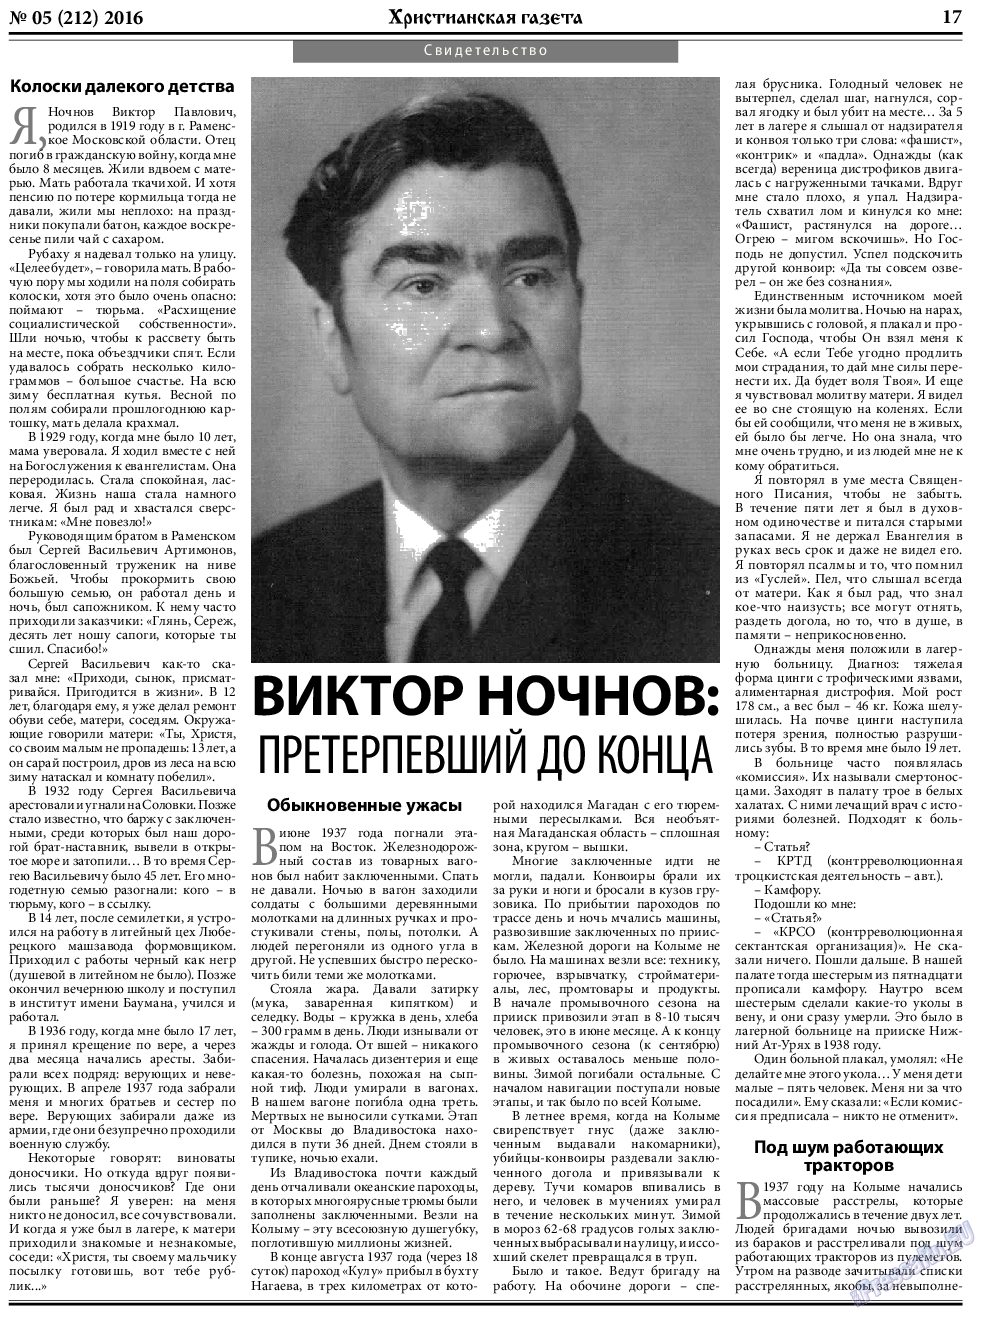 Христианская газета, газета. 2016 №5 стр.25